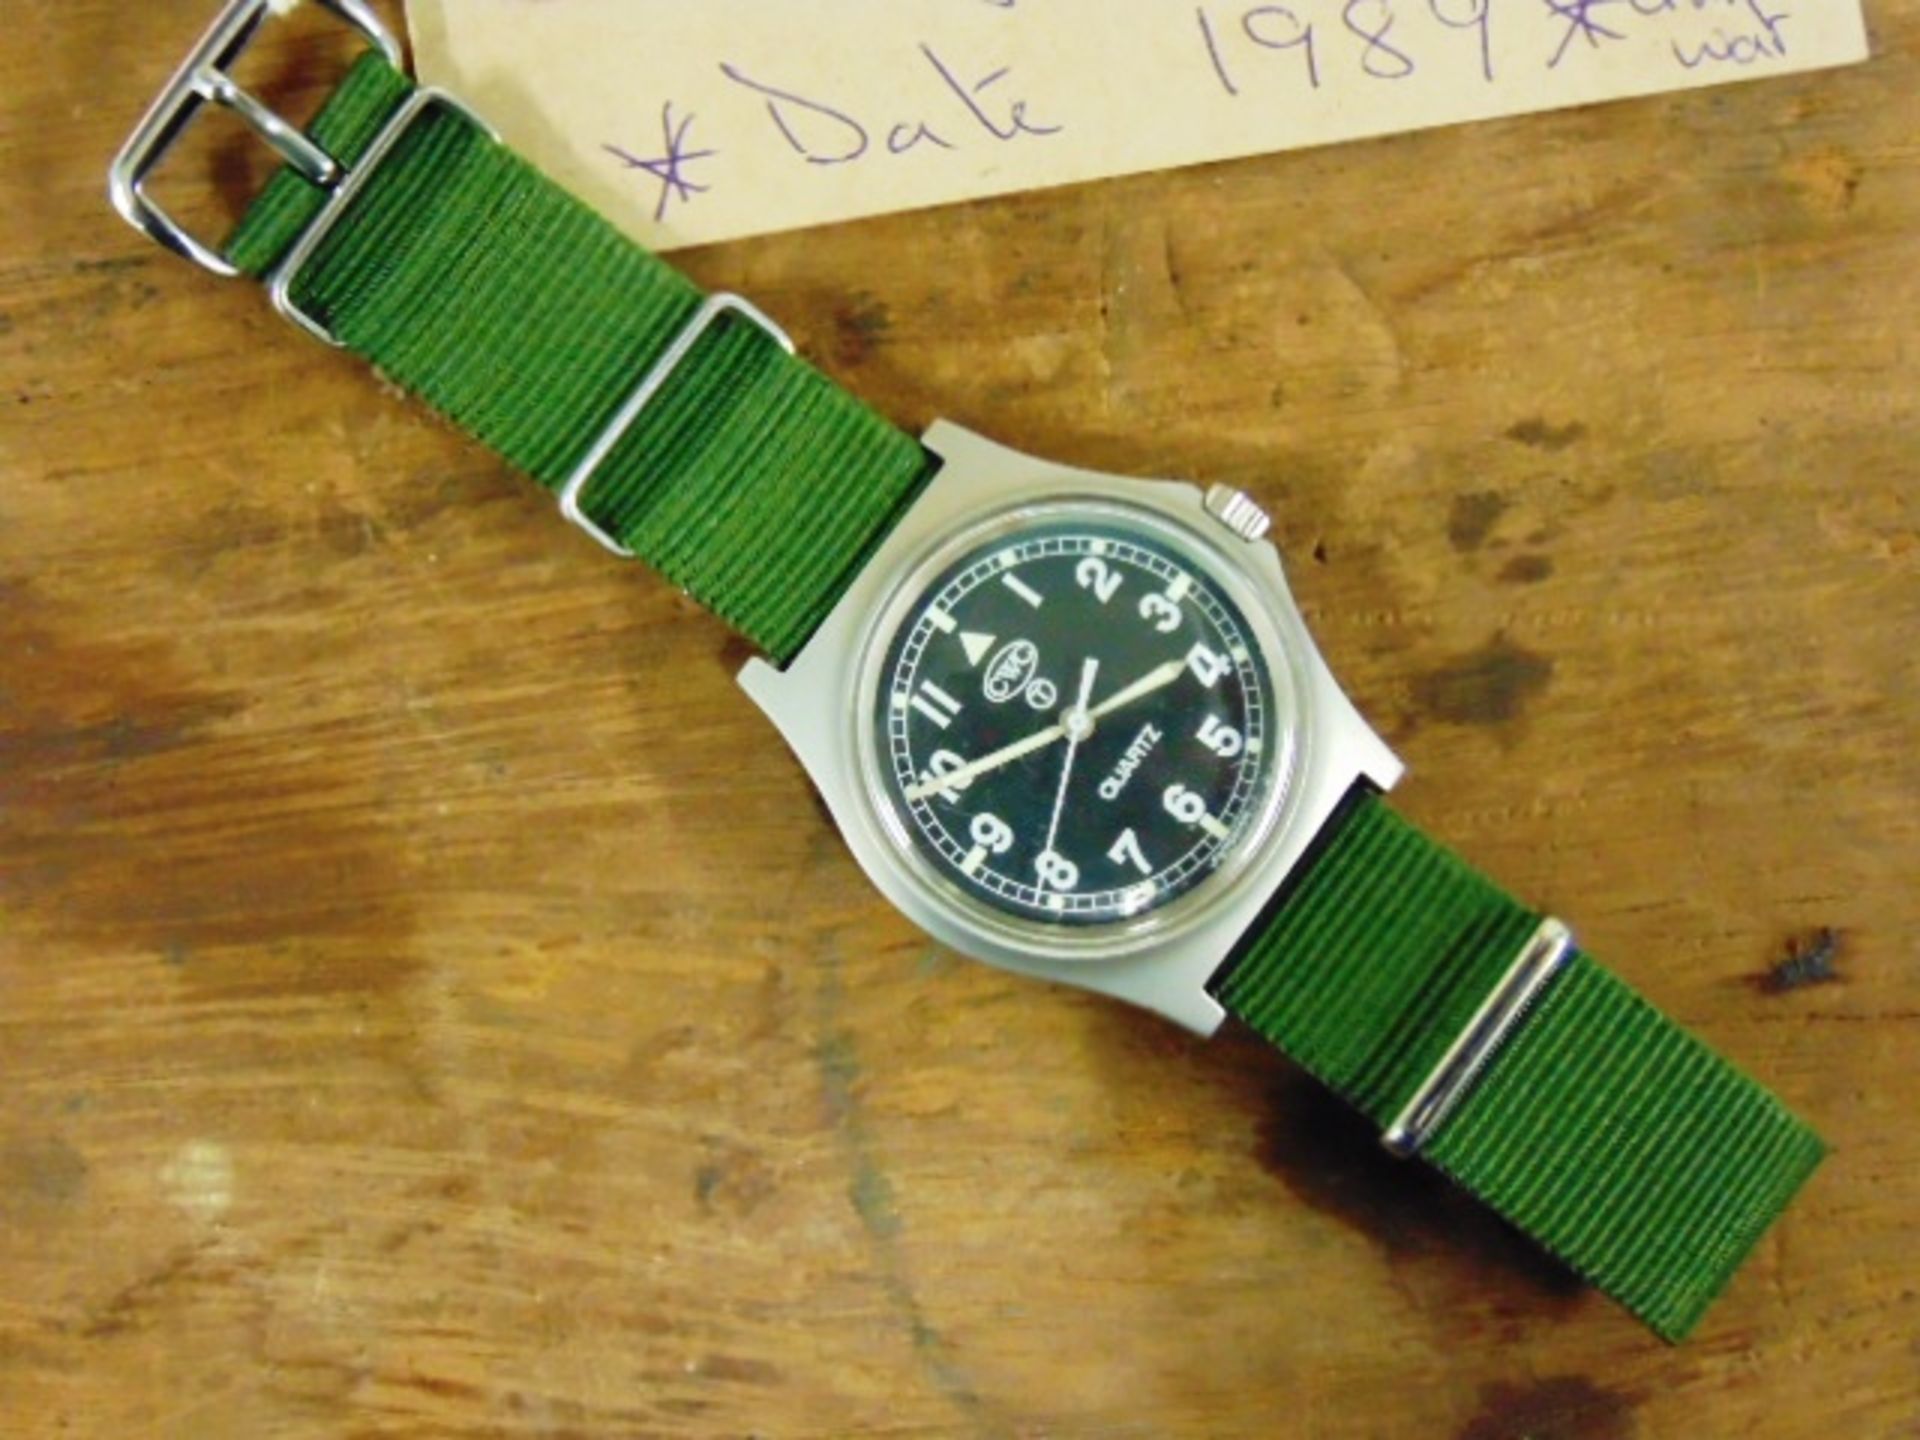 Unissued Genuine, Navy issue 0552, CWC quartz wrist watch - Image 3 of 6